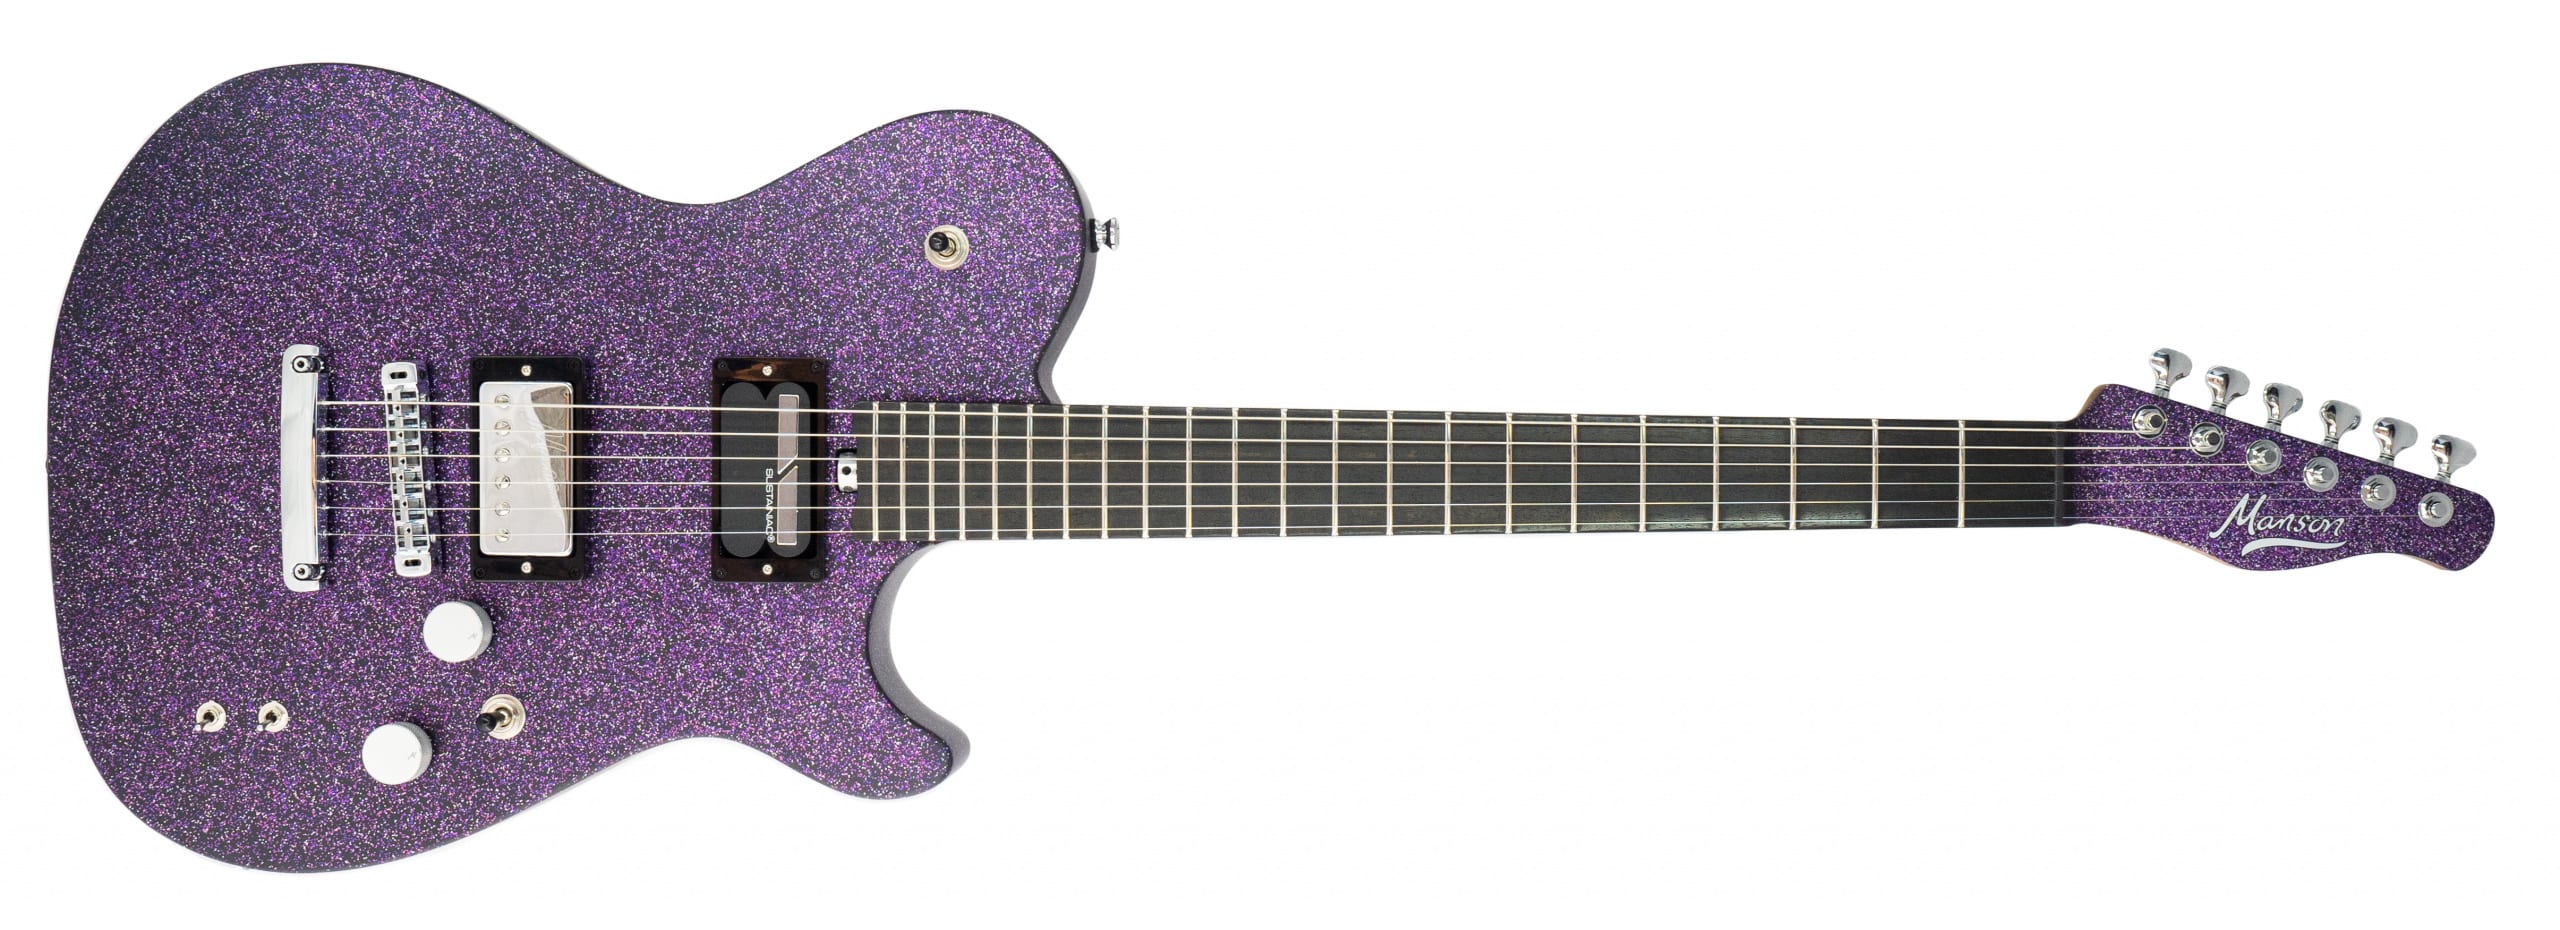 Manson Guitars MA 10th Anniversary Editions in Purple Nebula